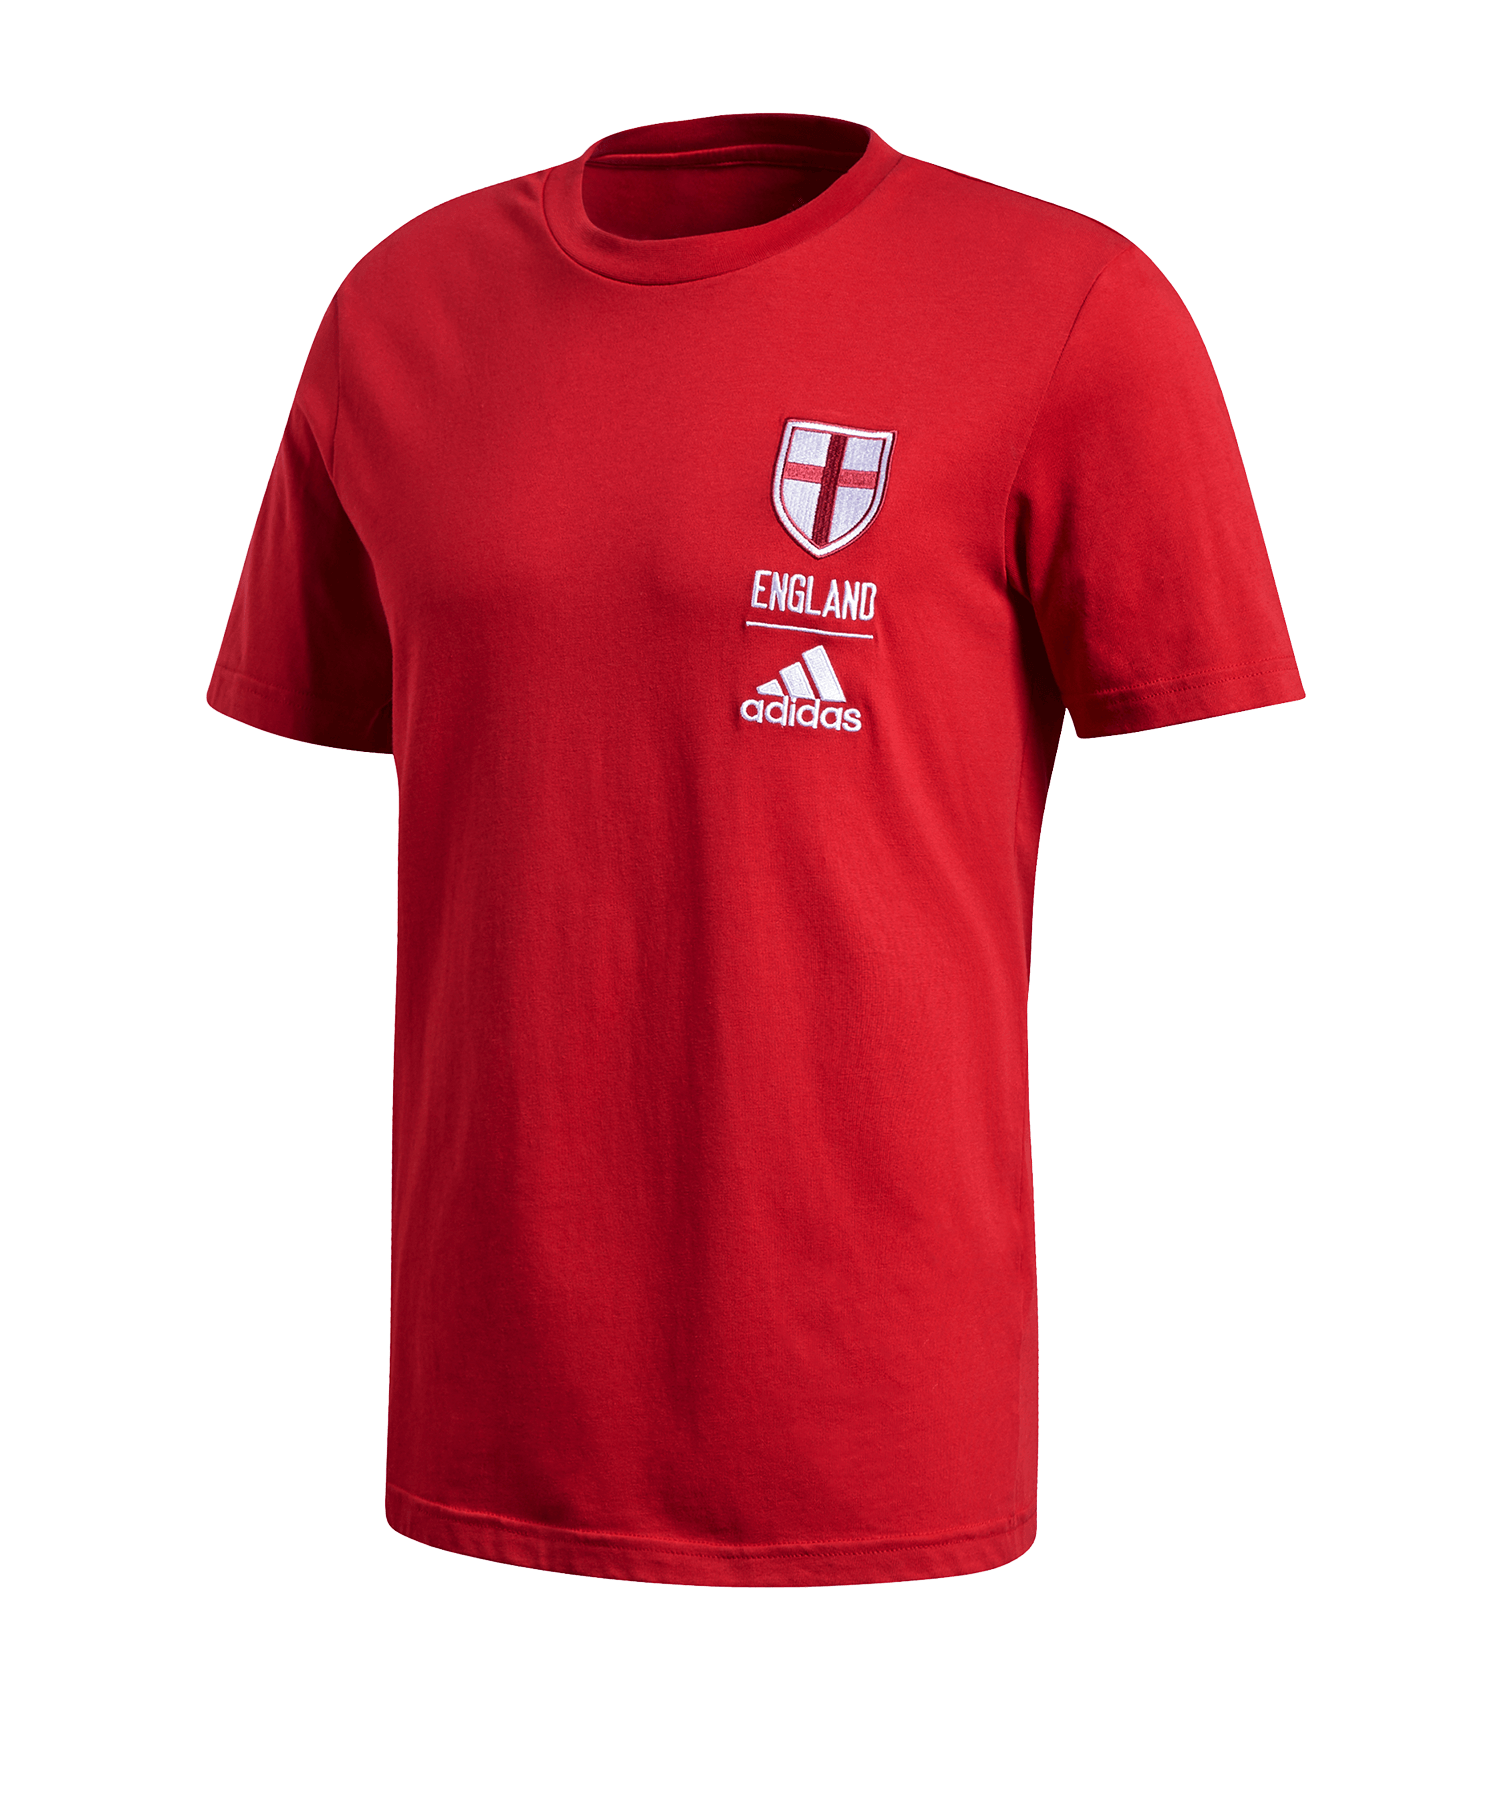 Huiskamer Kardinaal Diagnostiseren adidas England T-Shirt - Red